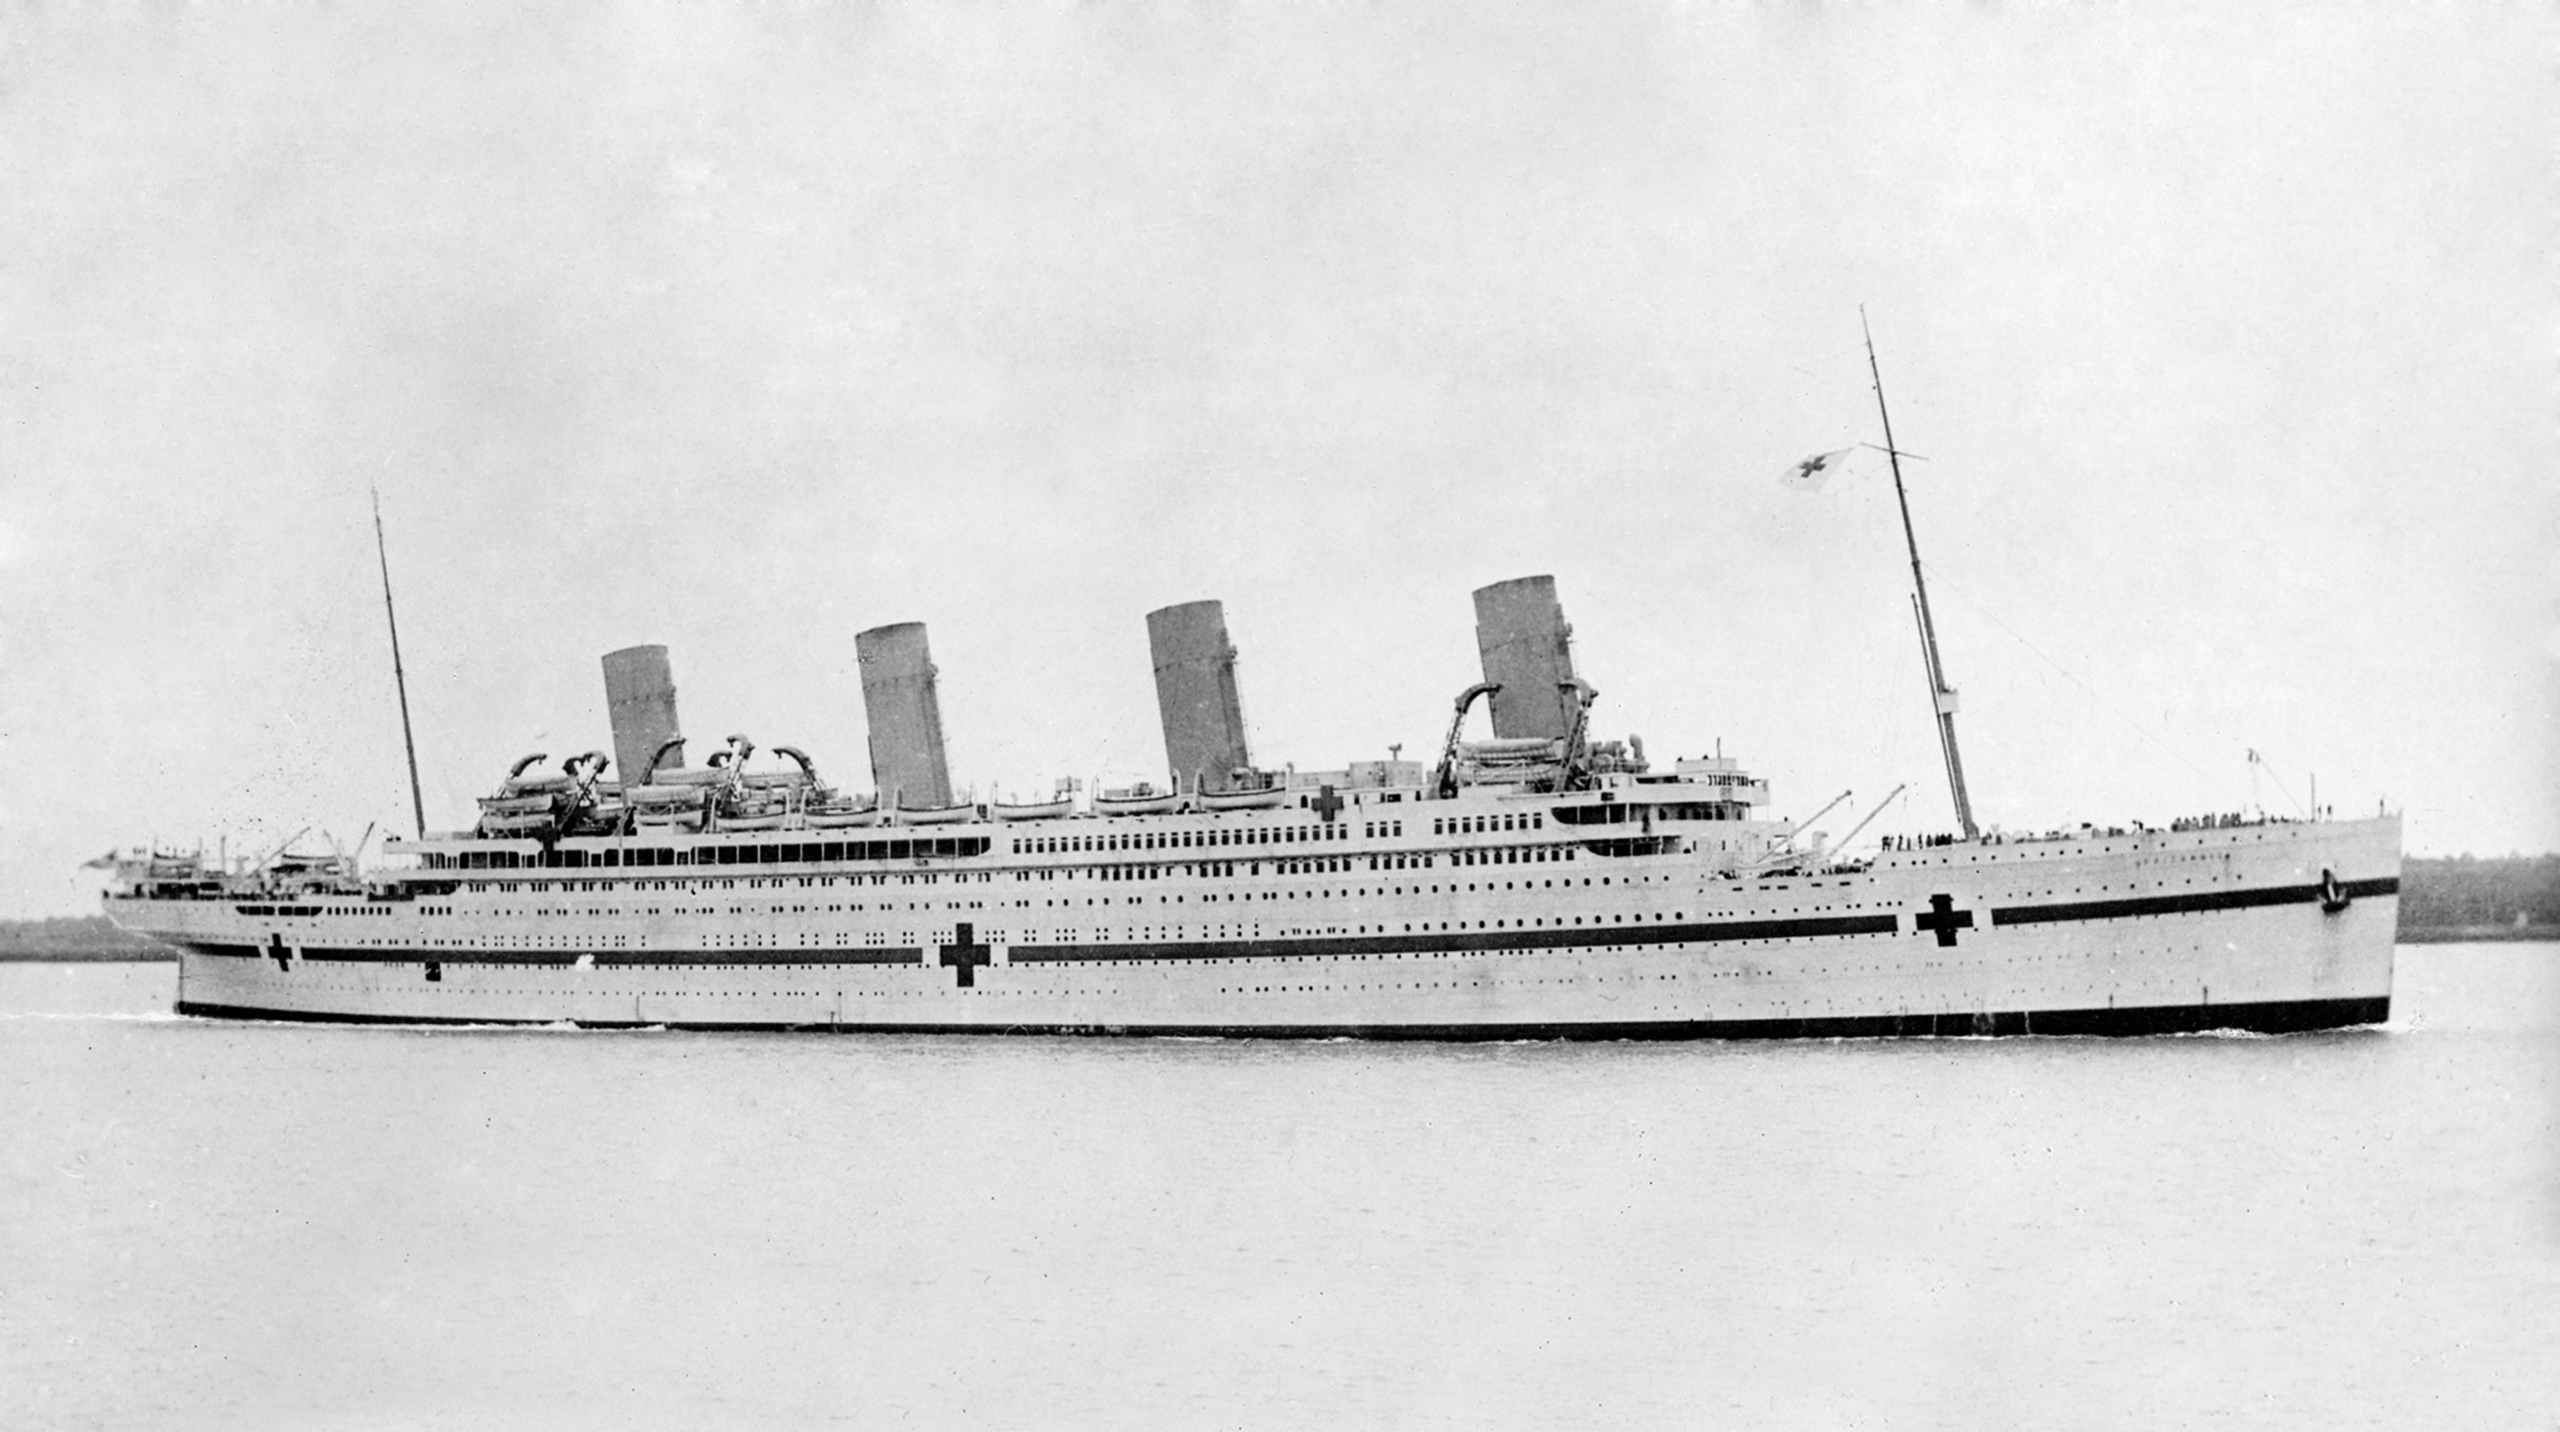 "Miss unsinkable" Violet Jessop - salamet tina Titanic, Olympic sareng Britannic Shipwrecks 2